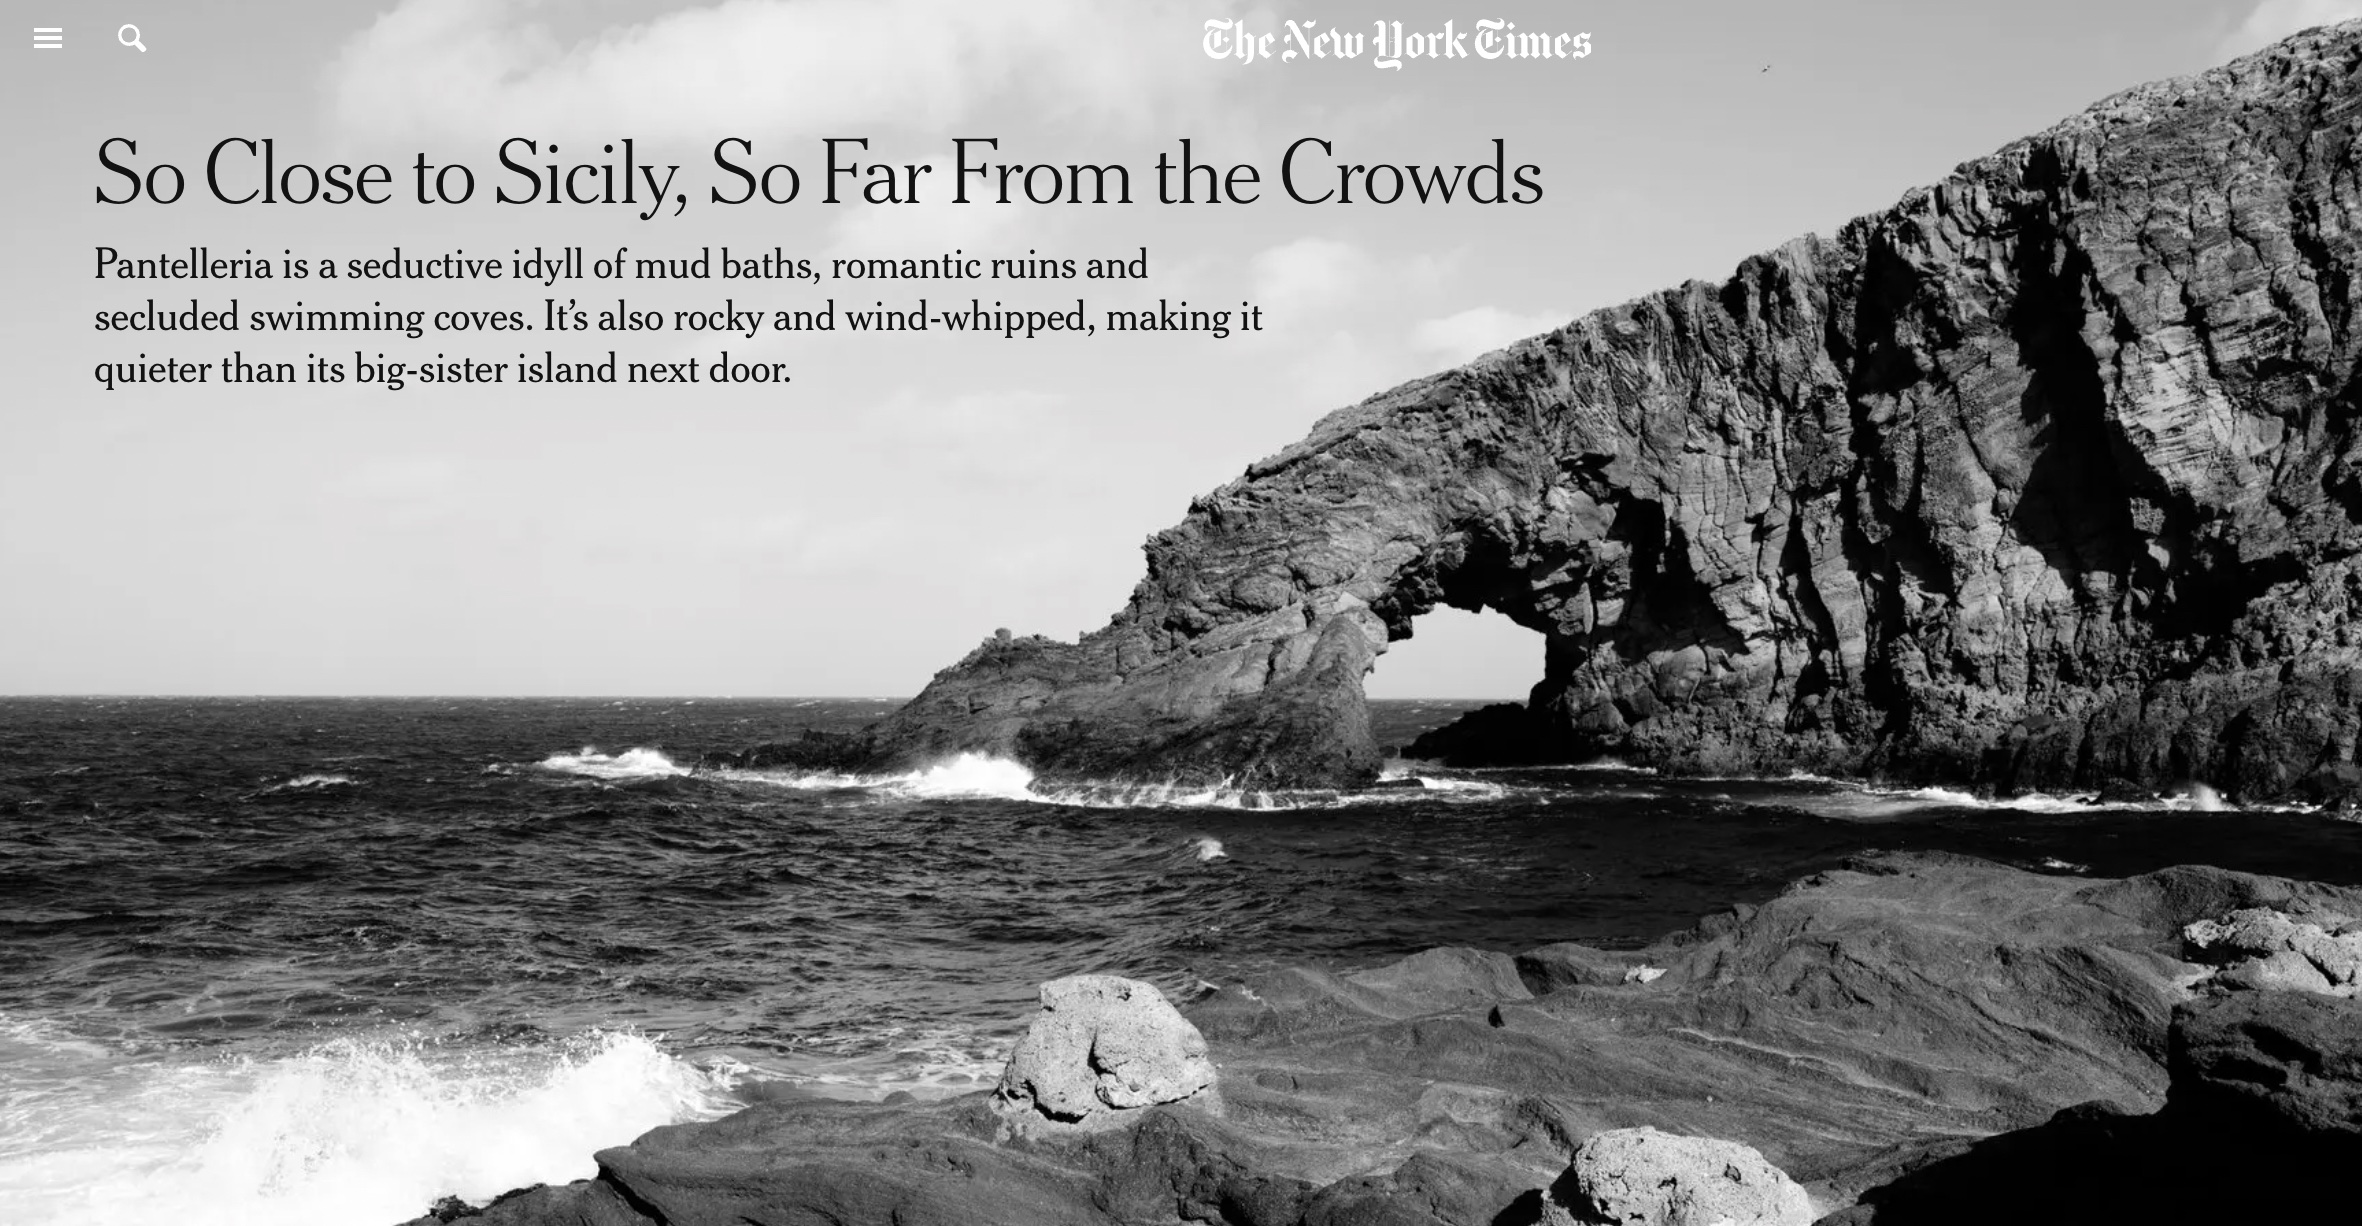 Pantelleria “Eden in mezzo al nulla” sul The New York Times